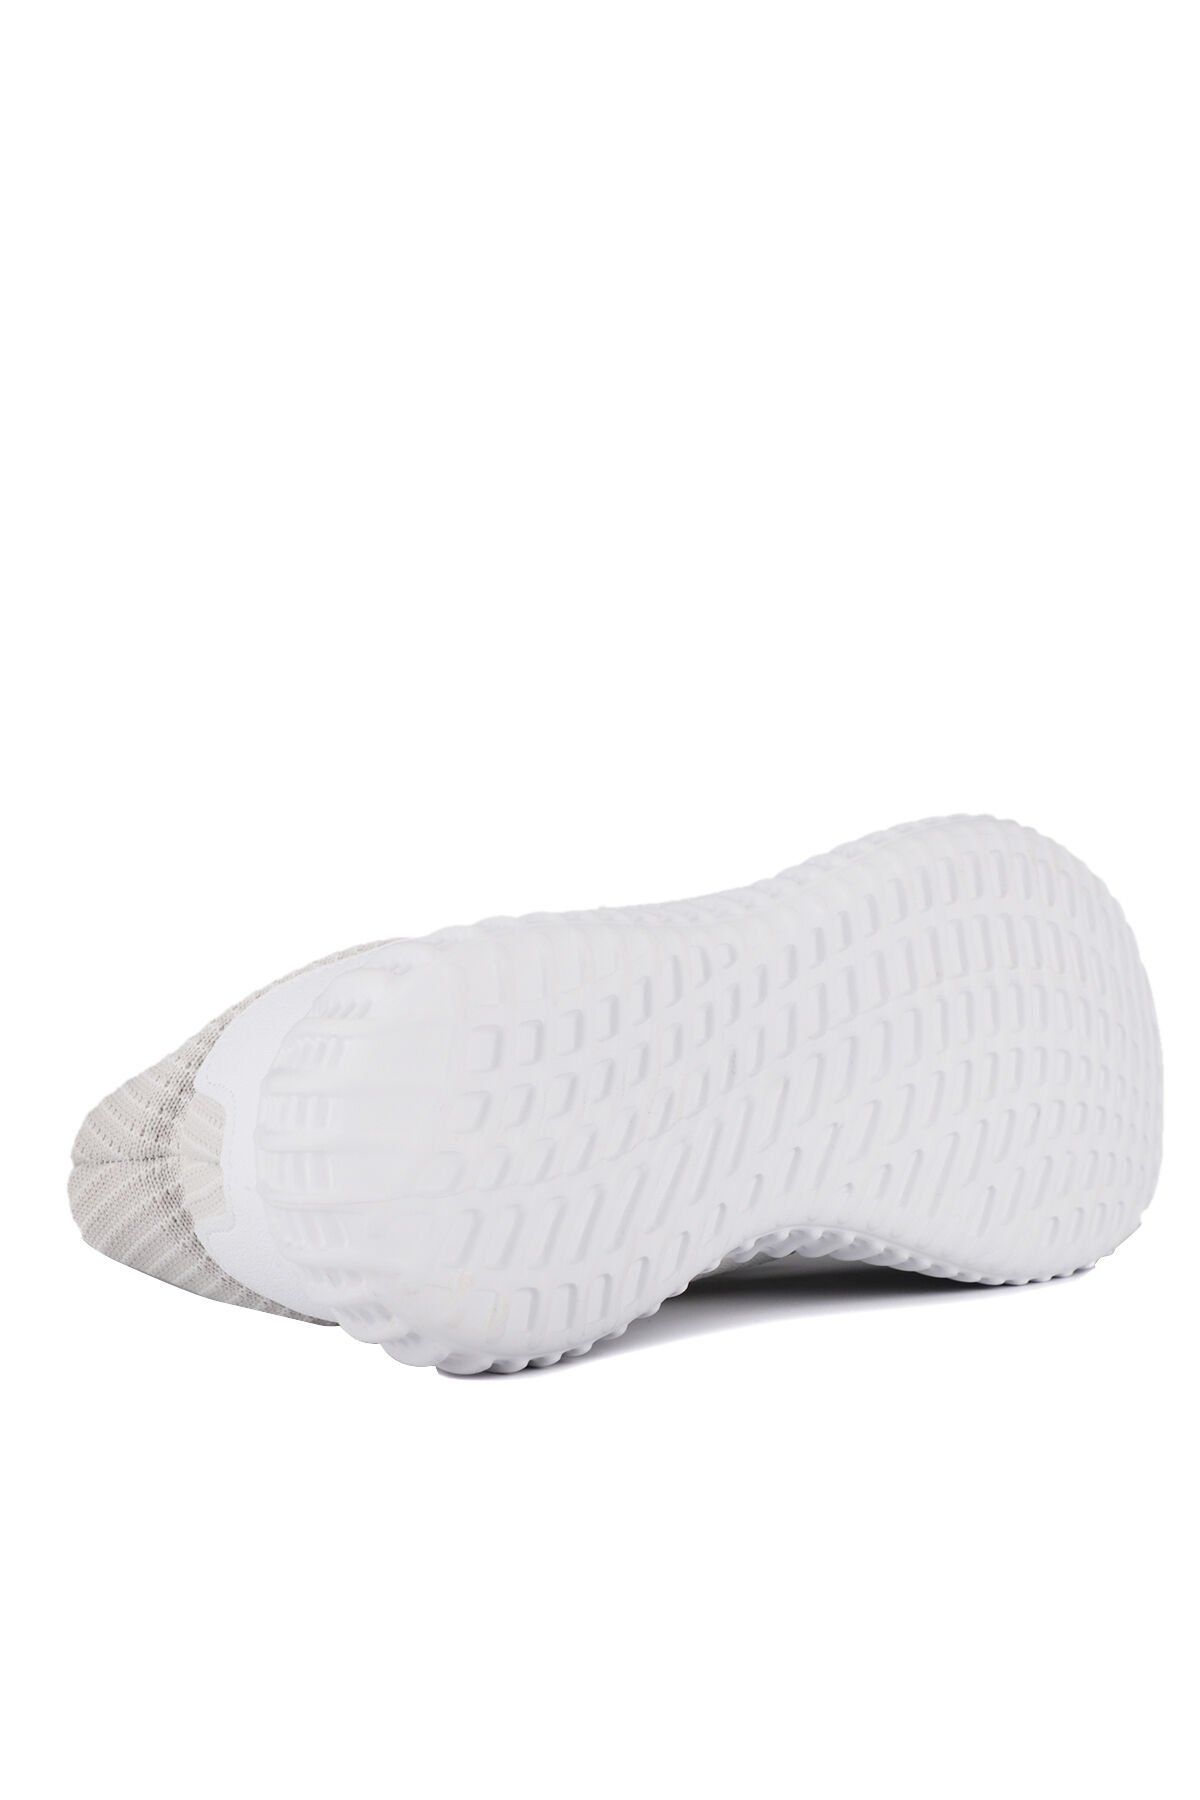 Slazenger ATOMIC Sneaker Erkek Ayakkabı Beyaz / Açık Gri - Thumbnail